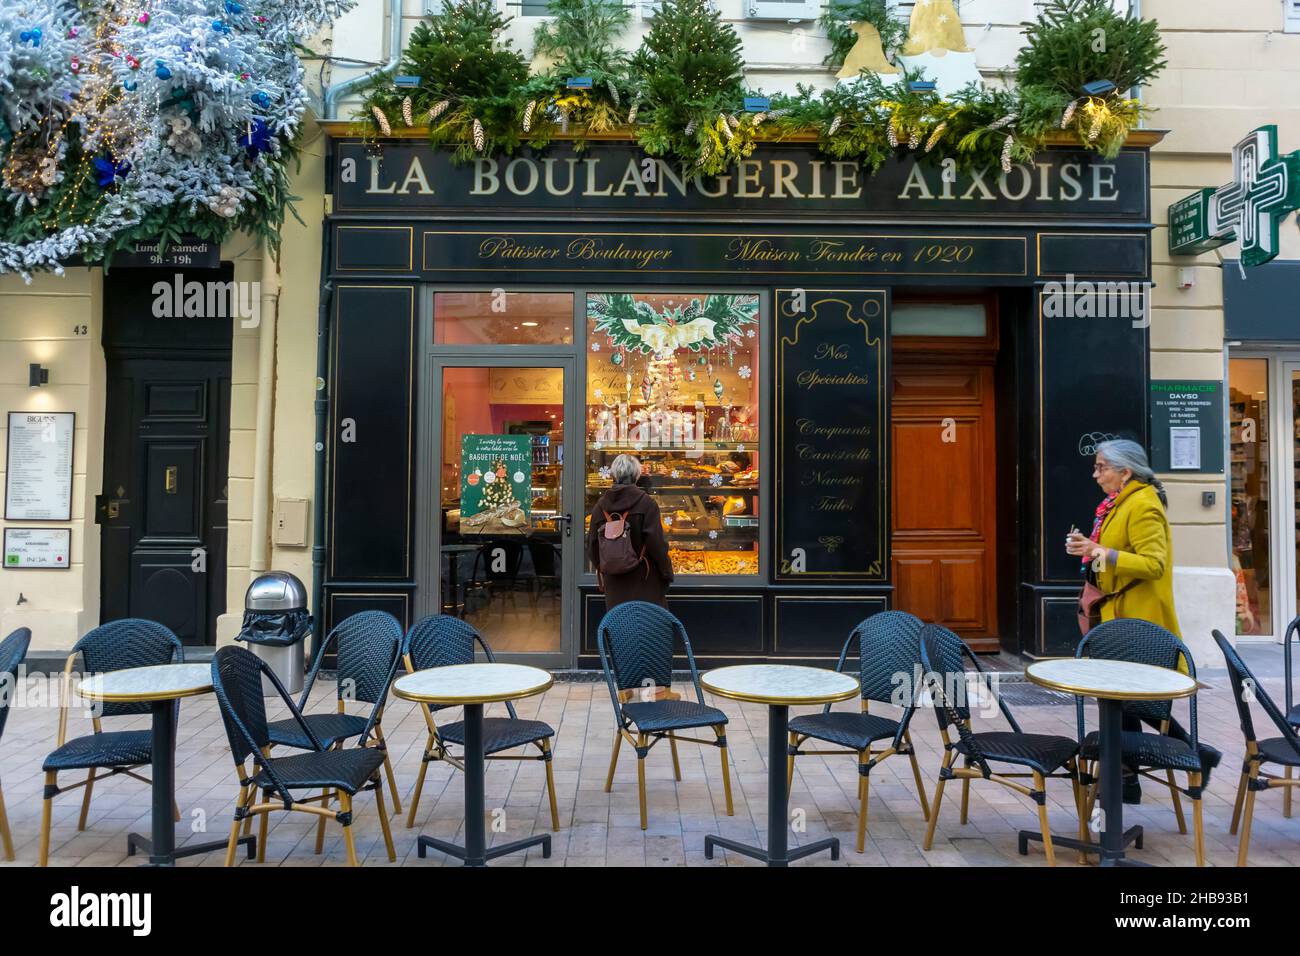 Marseille, France, Front de boulangerie française, boulangerie pâtisserie, tables sur le trottoir pain 'la boulangerie Aixoise' Banque D'Images